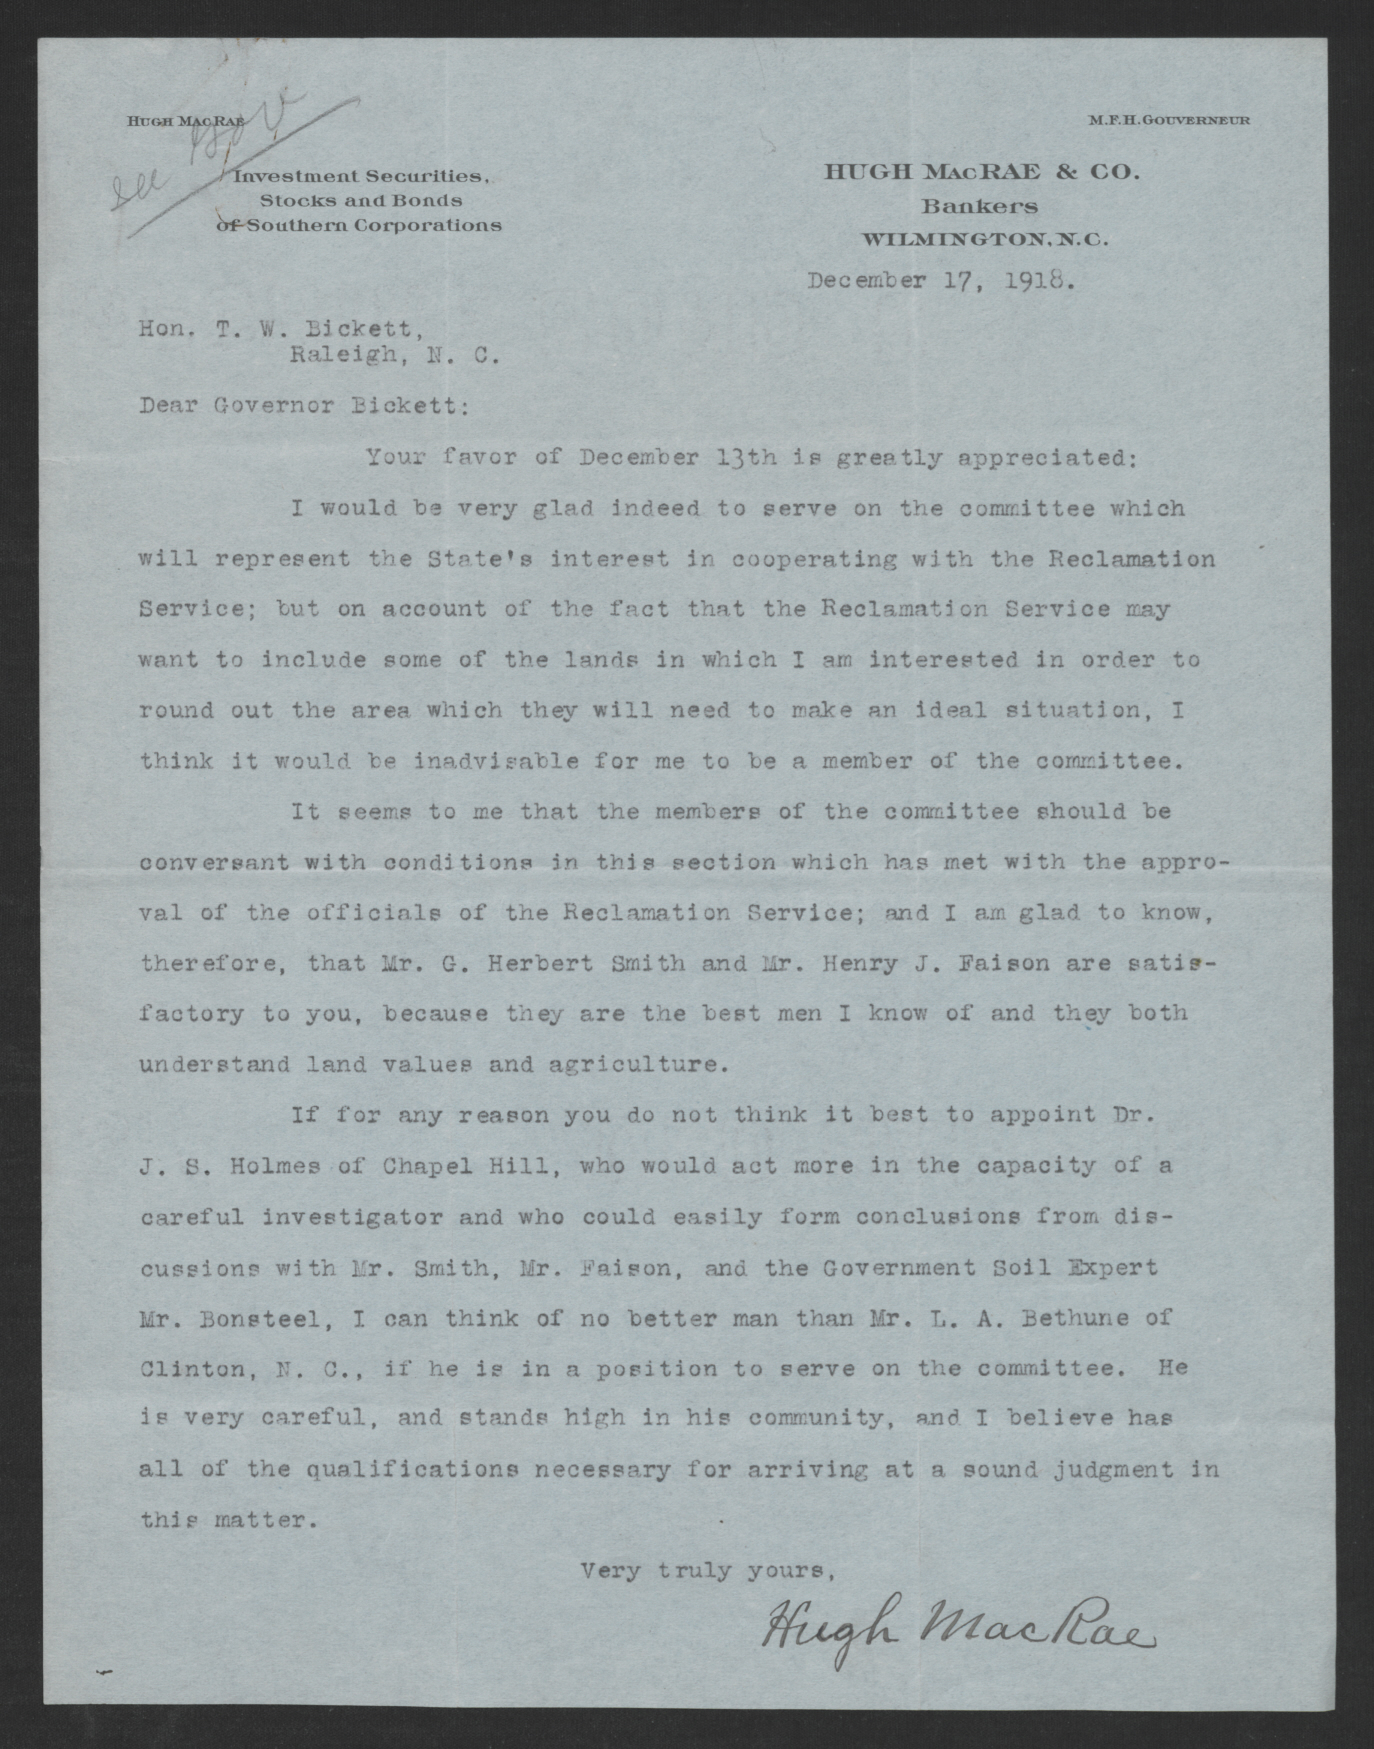 Letter from Hugh MacRae to Gov. Bickett, December 17, 1918